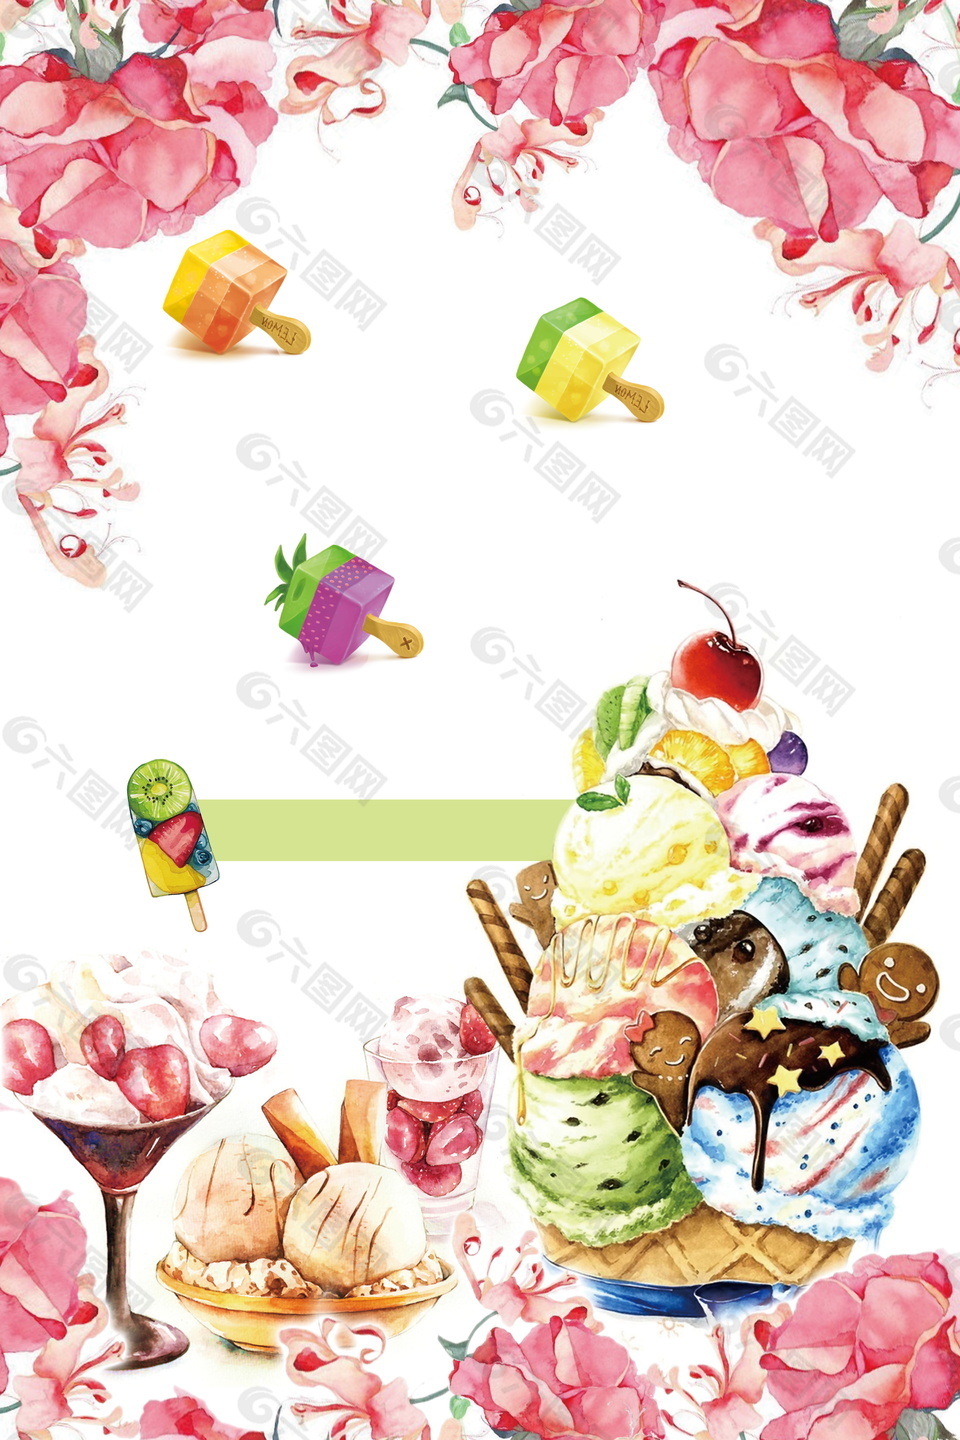 夏日花朵冰淇淋海报背景素材